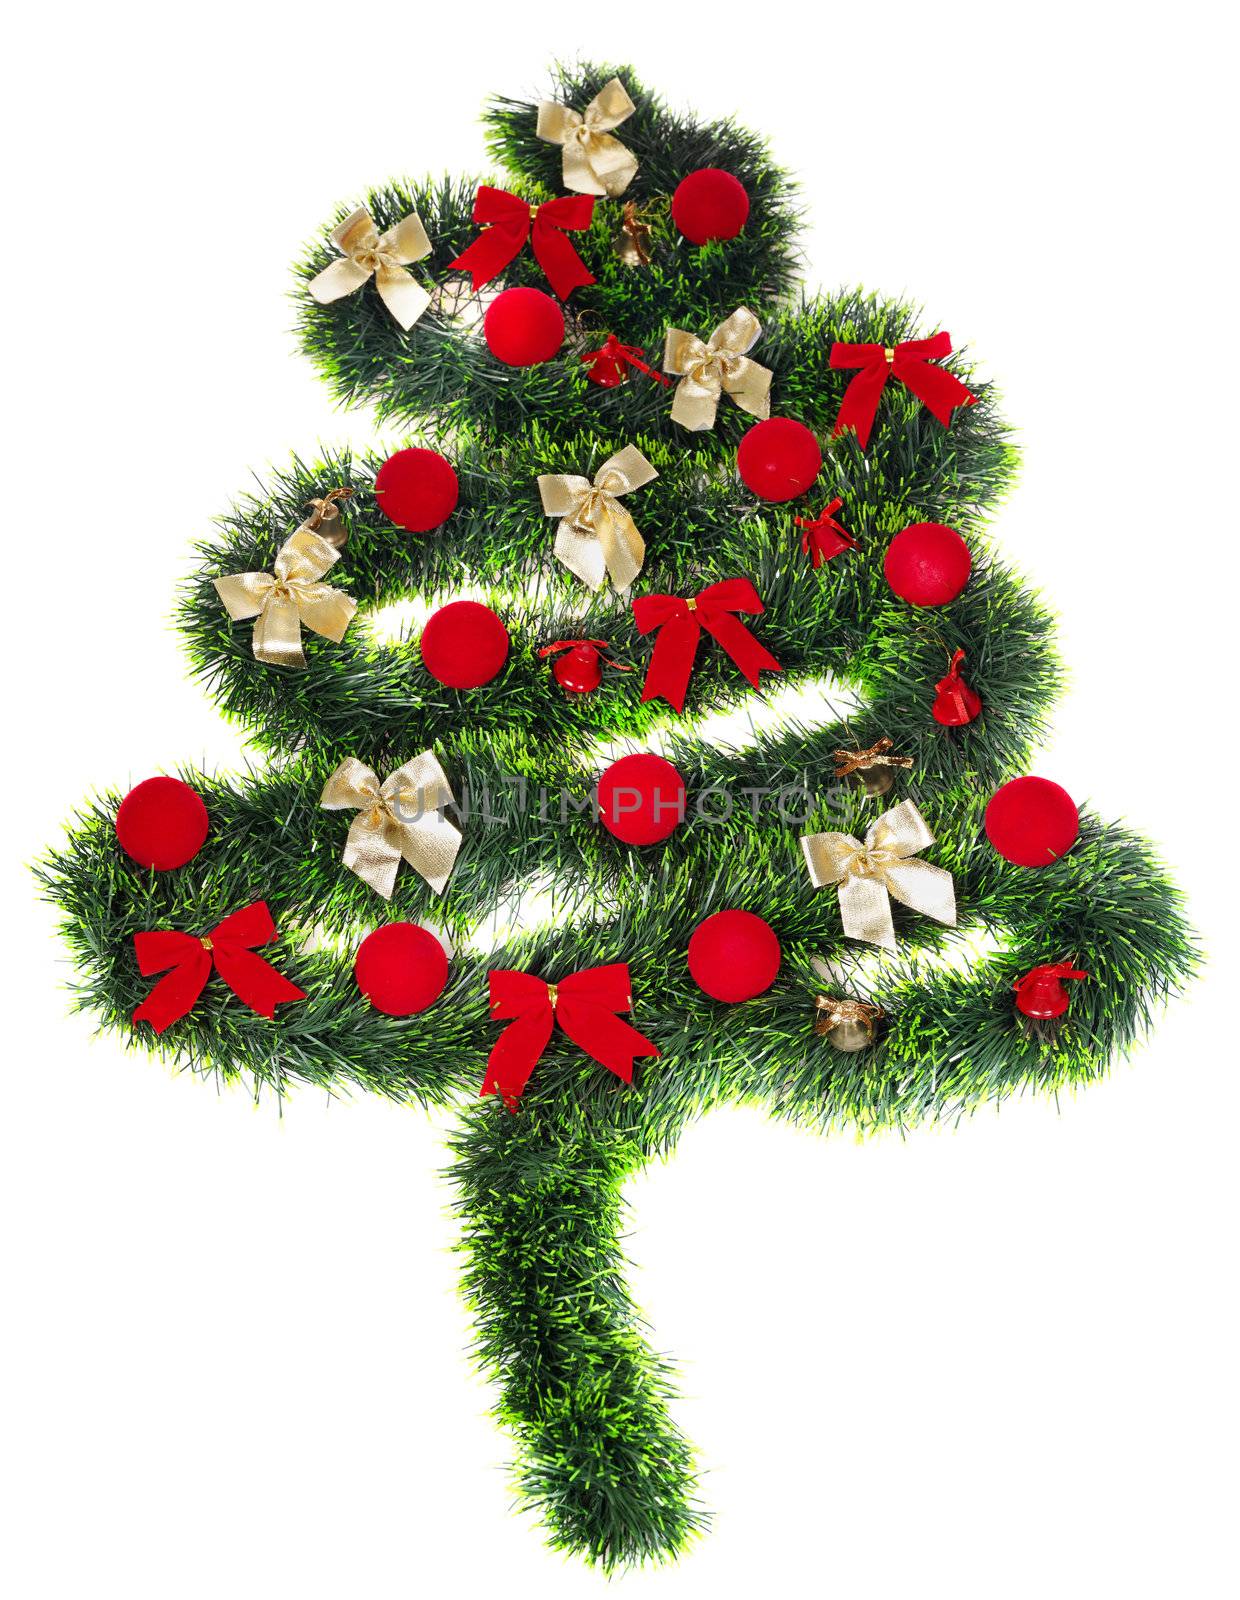 Christmas decoration, isolated on white background